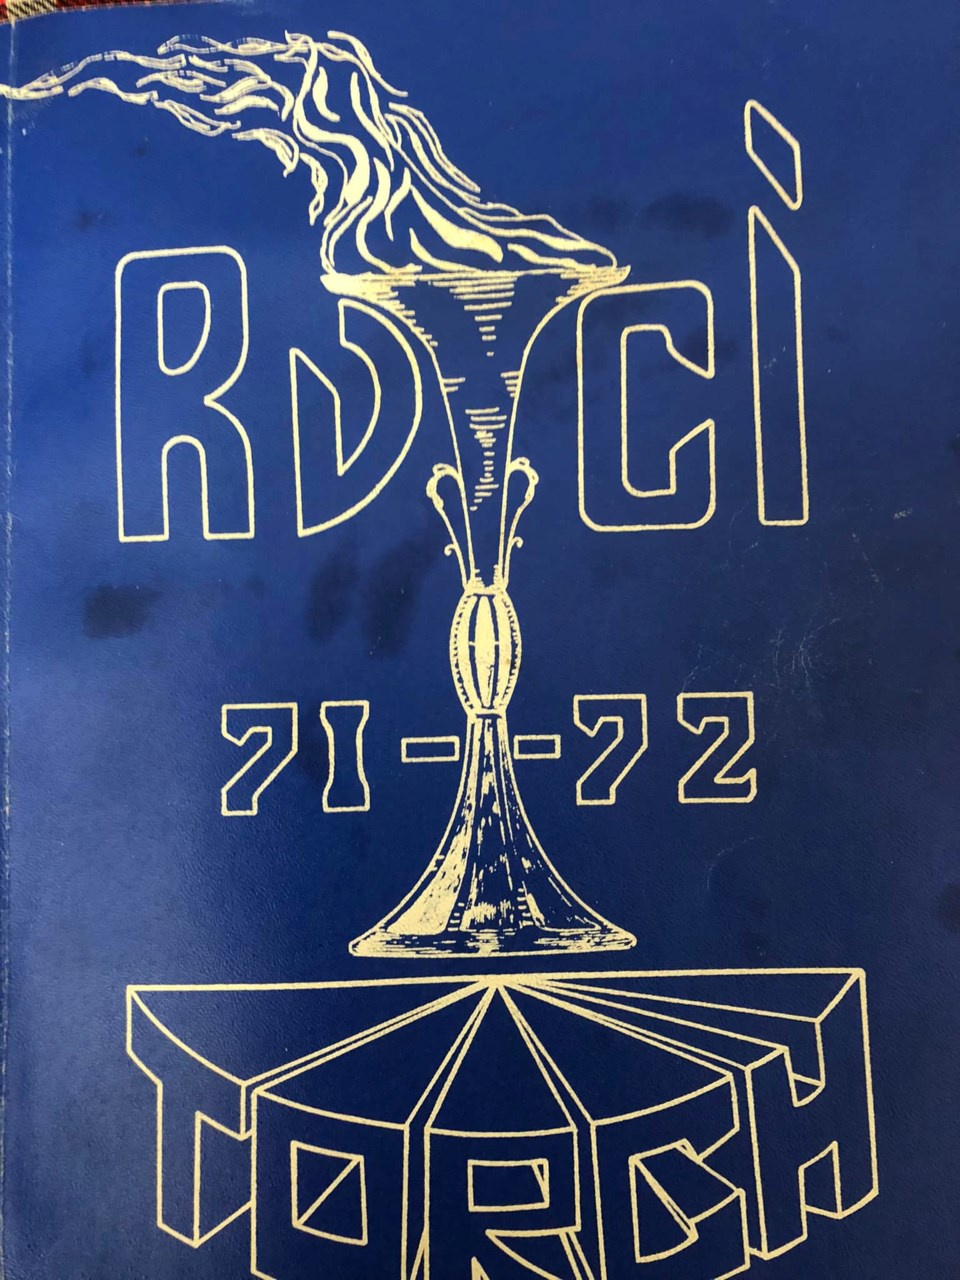 RVCI 71-72 Torch